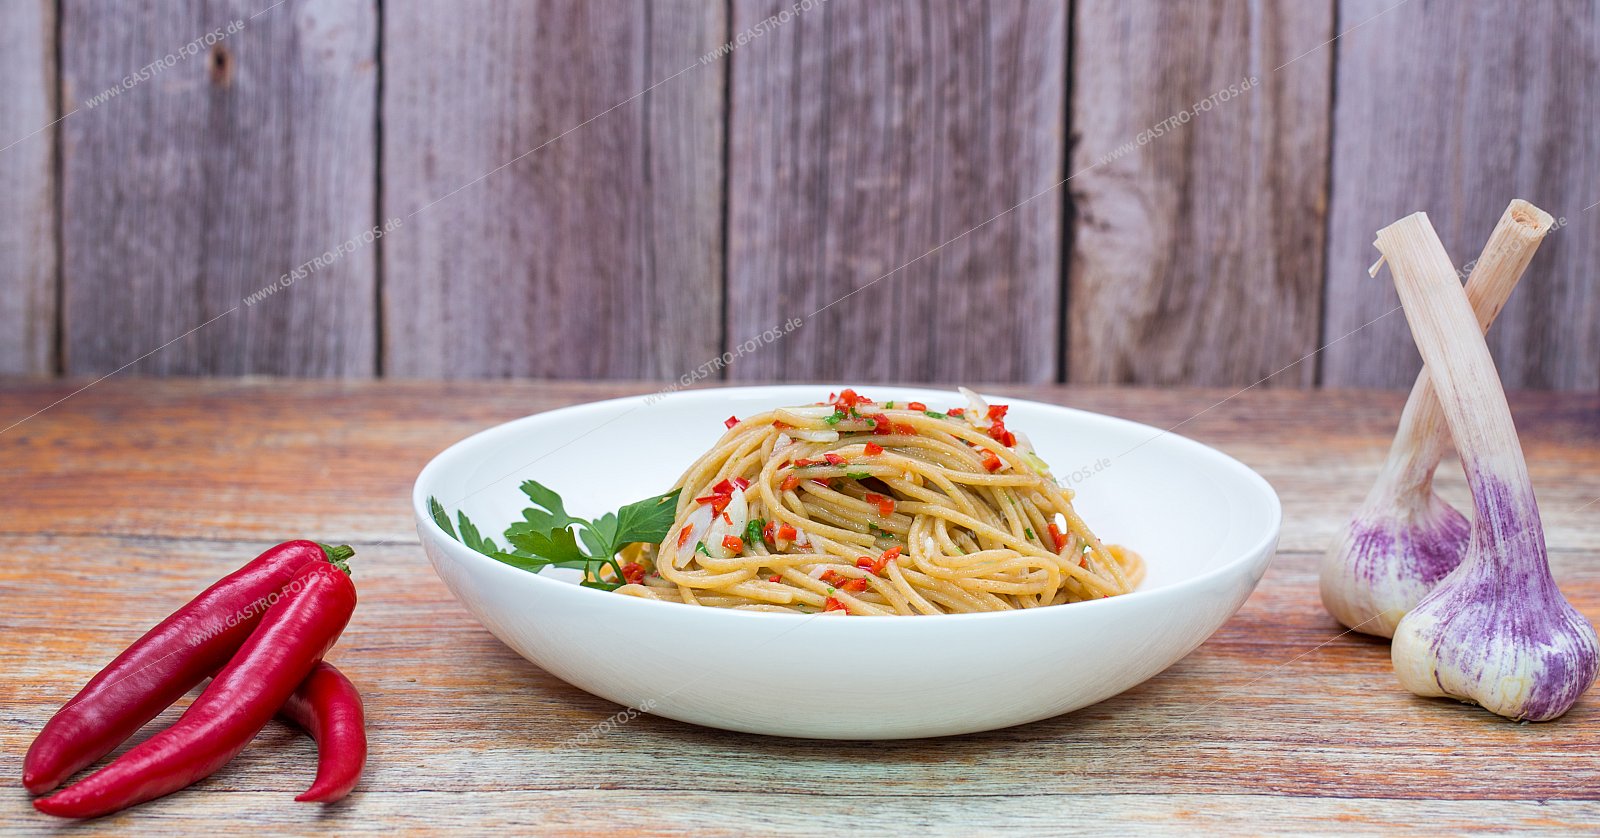 Spaghetti aglio olio e peperocino - Nudelgerichte mit Sauce